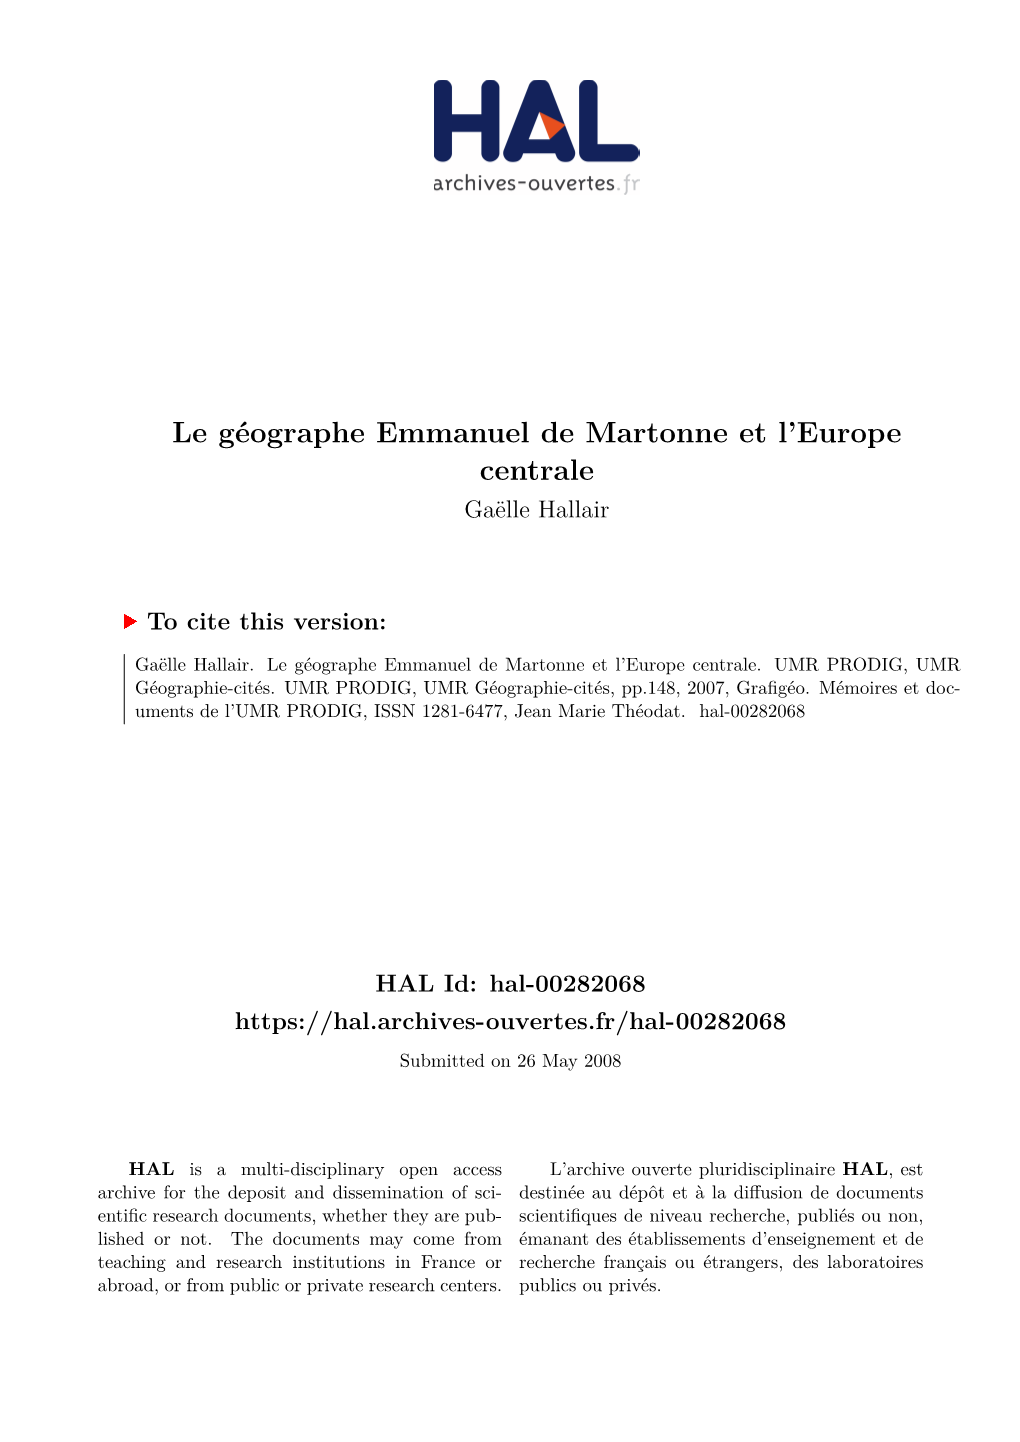 Le Géographe Emmanuel De Martonne Et L'europe Centrale